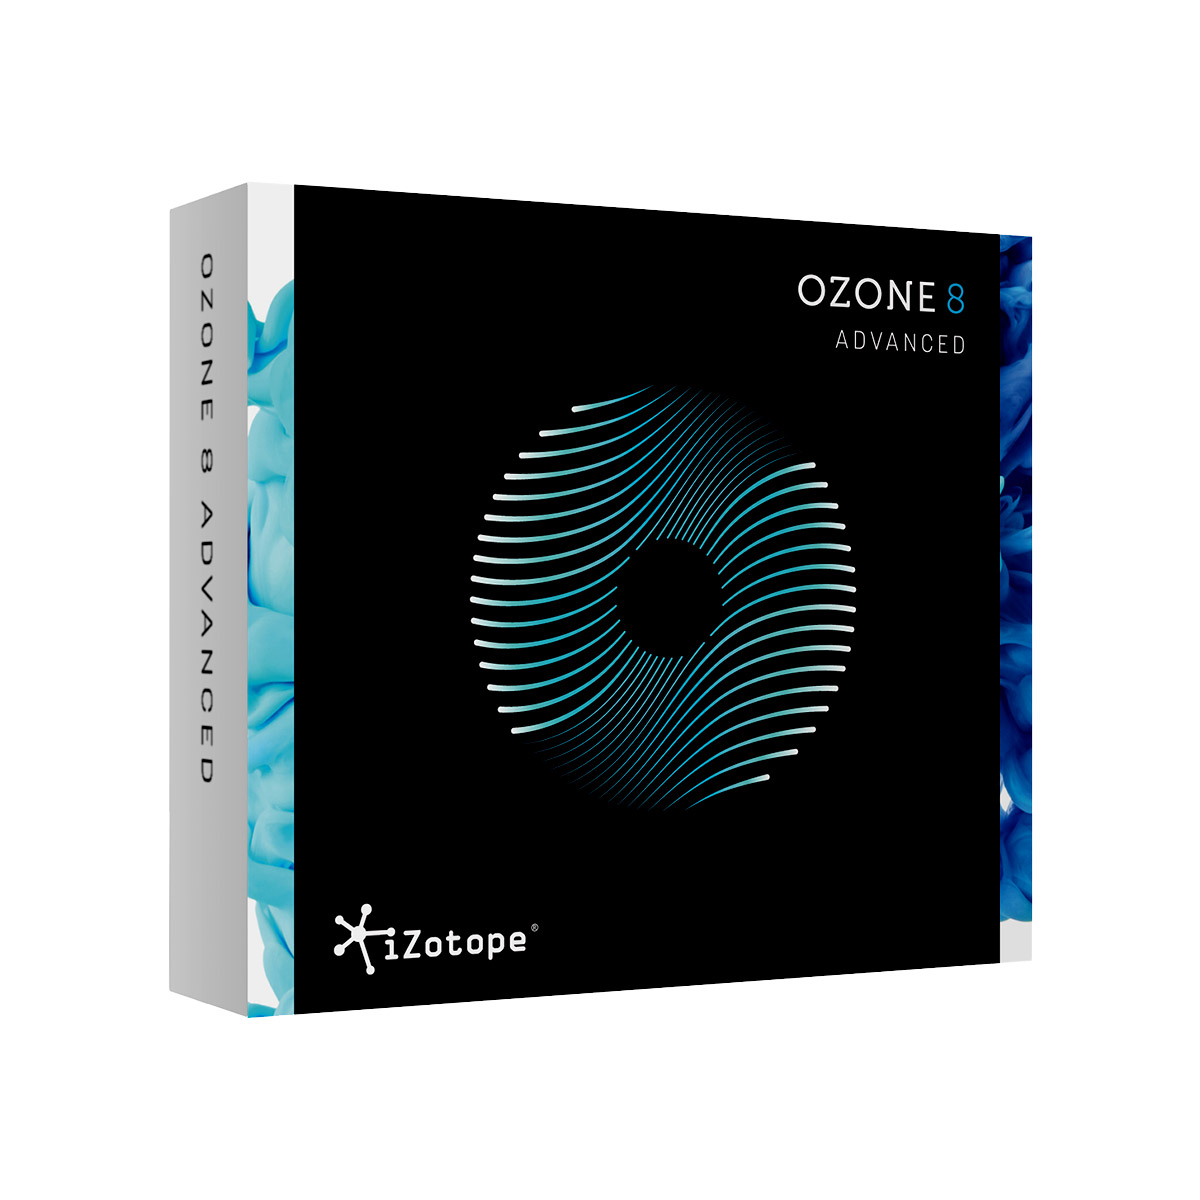 ozone 8 advanced